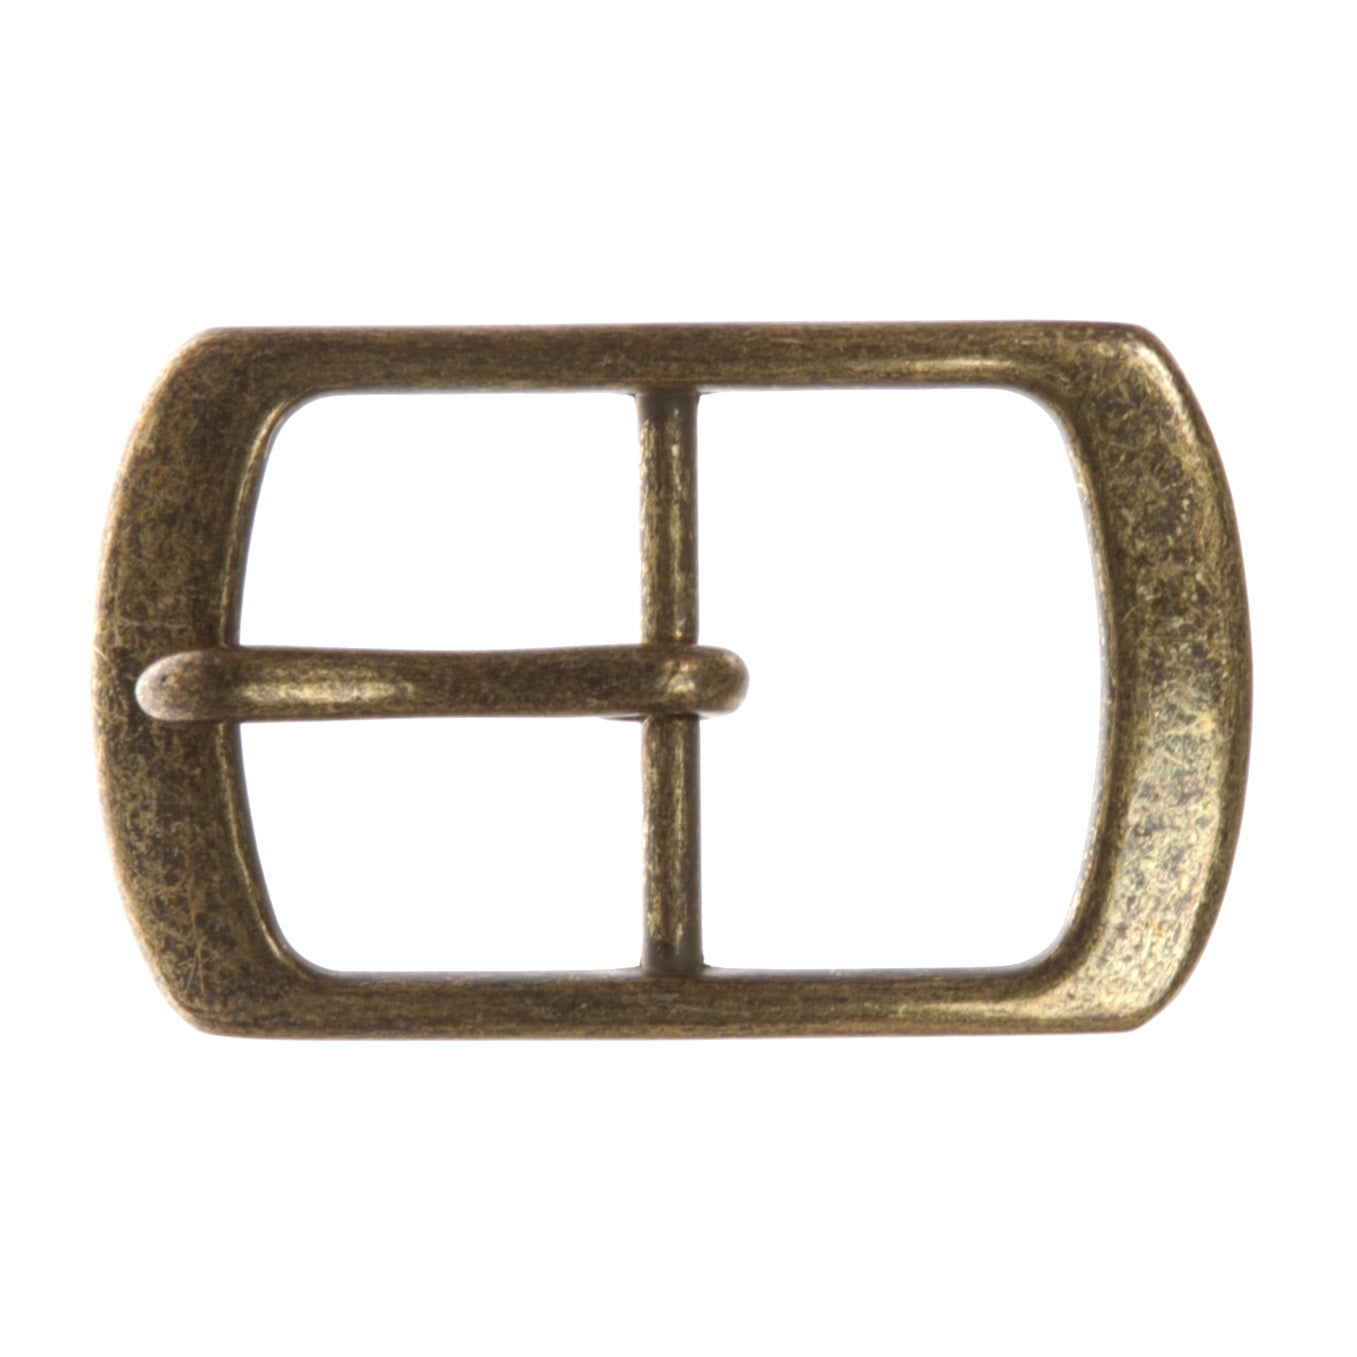 1 1/2" (38 mm) Center Bar Single Prong Rectangular Belt Buckle